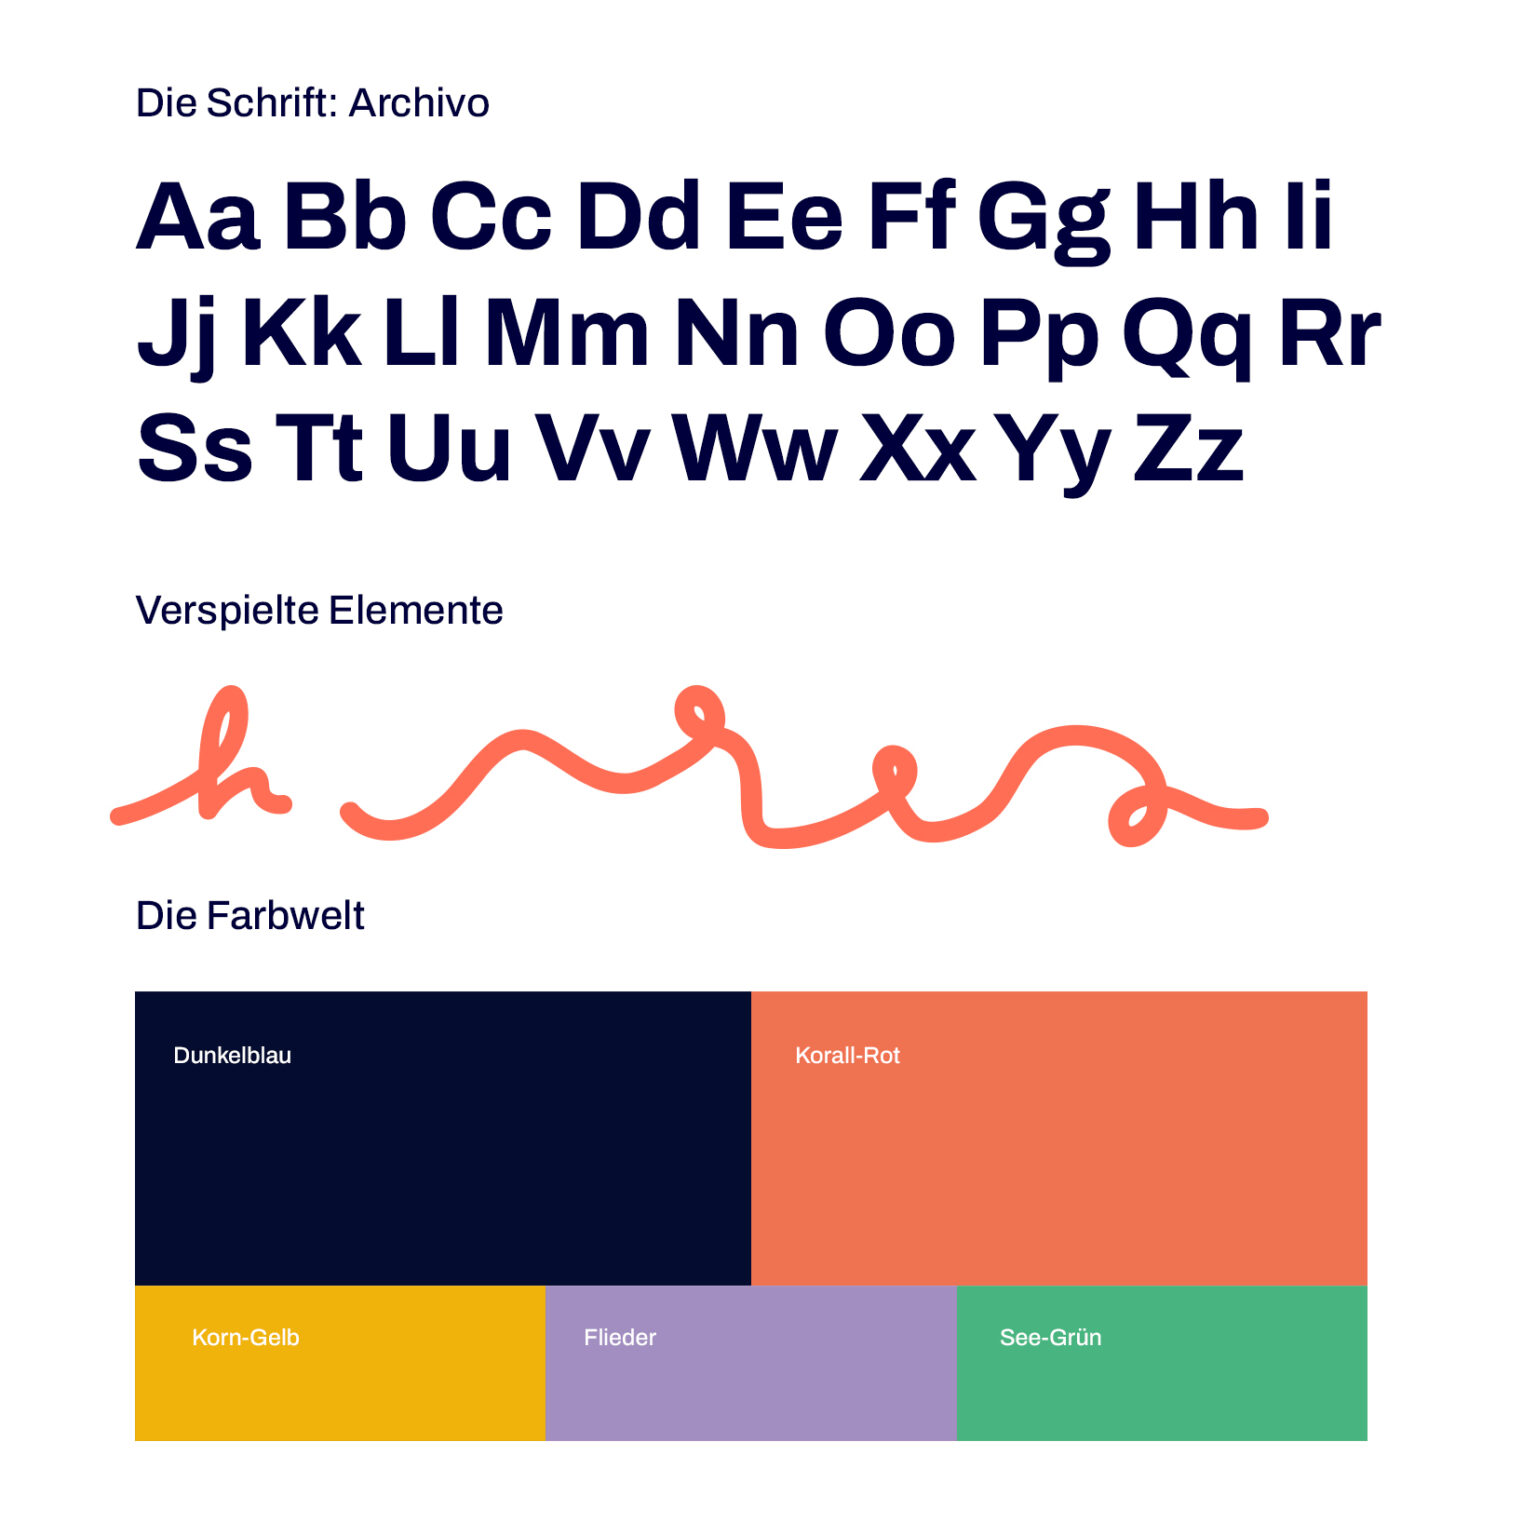 Übersicht Corporate Design Farben Typografie der Marke callheinz